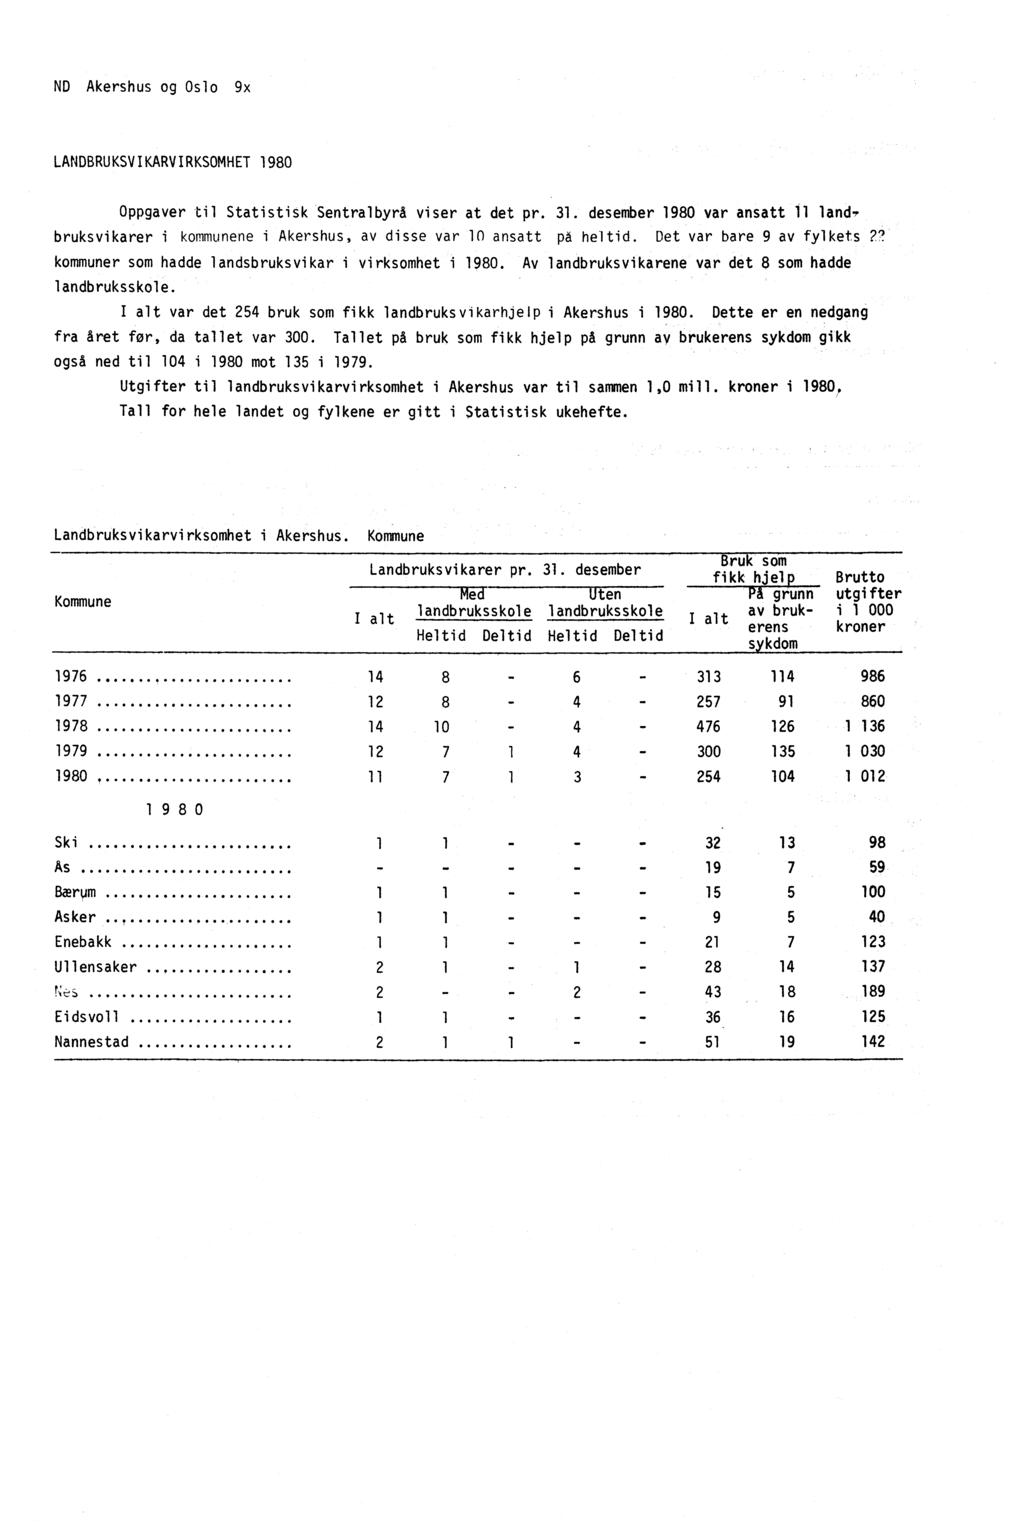 ND Akershus og Oslo LANDBRUKSVIKARVIRKSOMHET 1980 Oppgaver til Statistisk Sentralbyrå viser at det pr. 31. desember 1980 var ansatt 11 land.